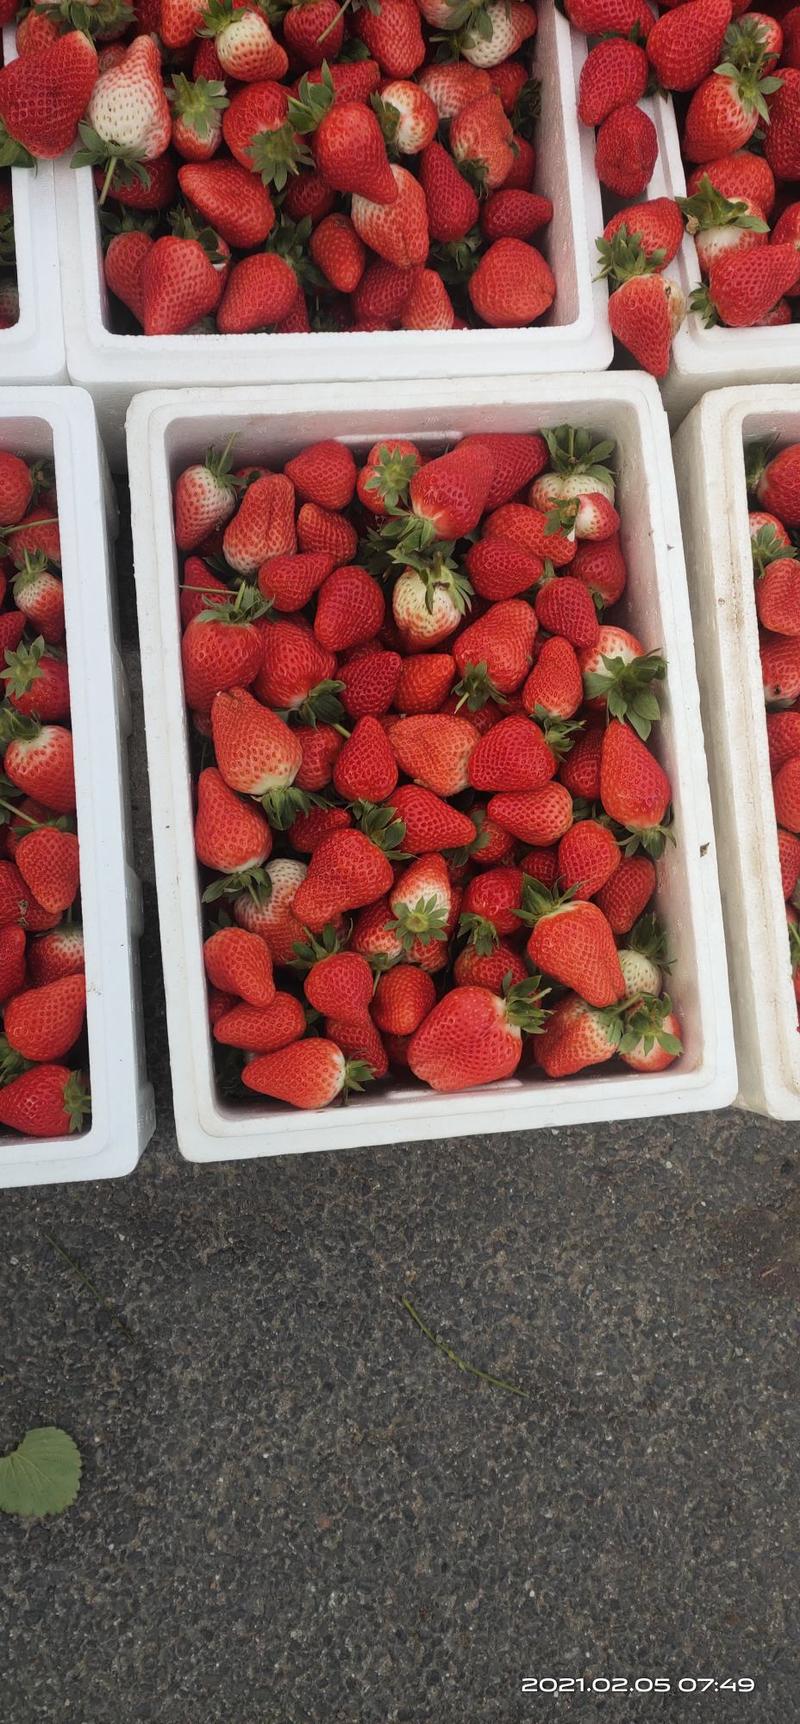 中牟辉煌草莓生态园，奶香草莓基地，新鲜现摘